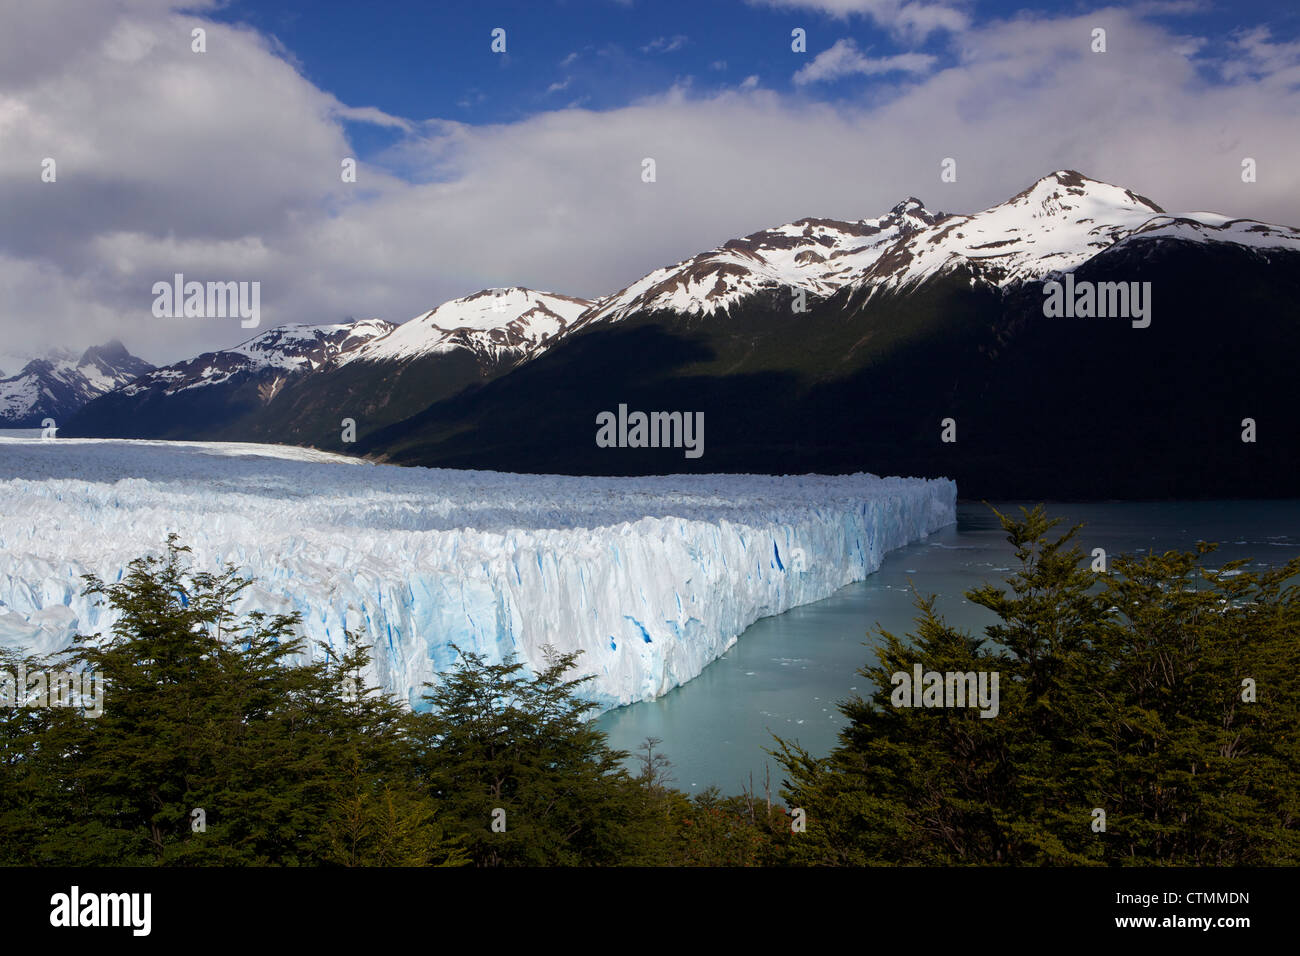 View from the boardwalks of Perito Moreno Glacier, Parque Nacional Los Glaciares, El Calafate, Patagonia Argentina South America Stock Photo